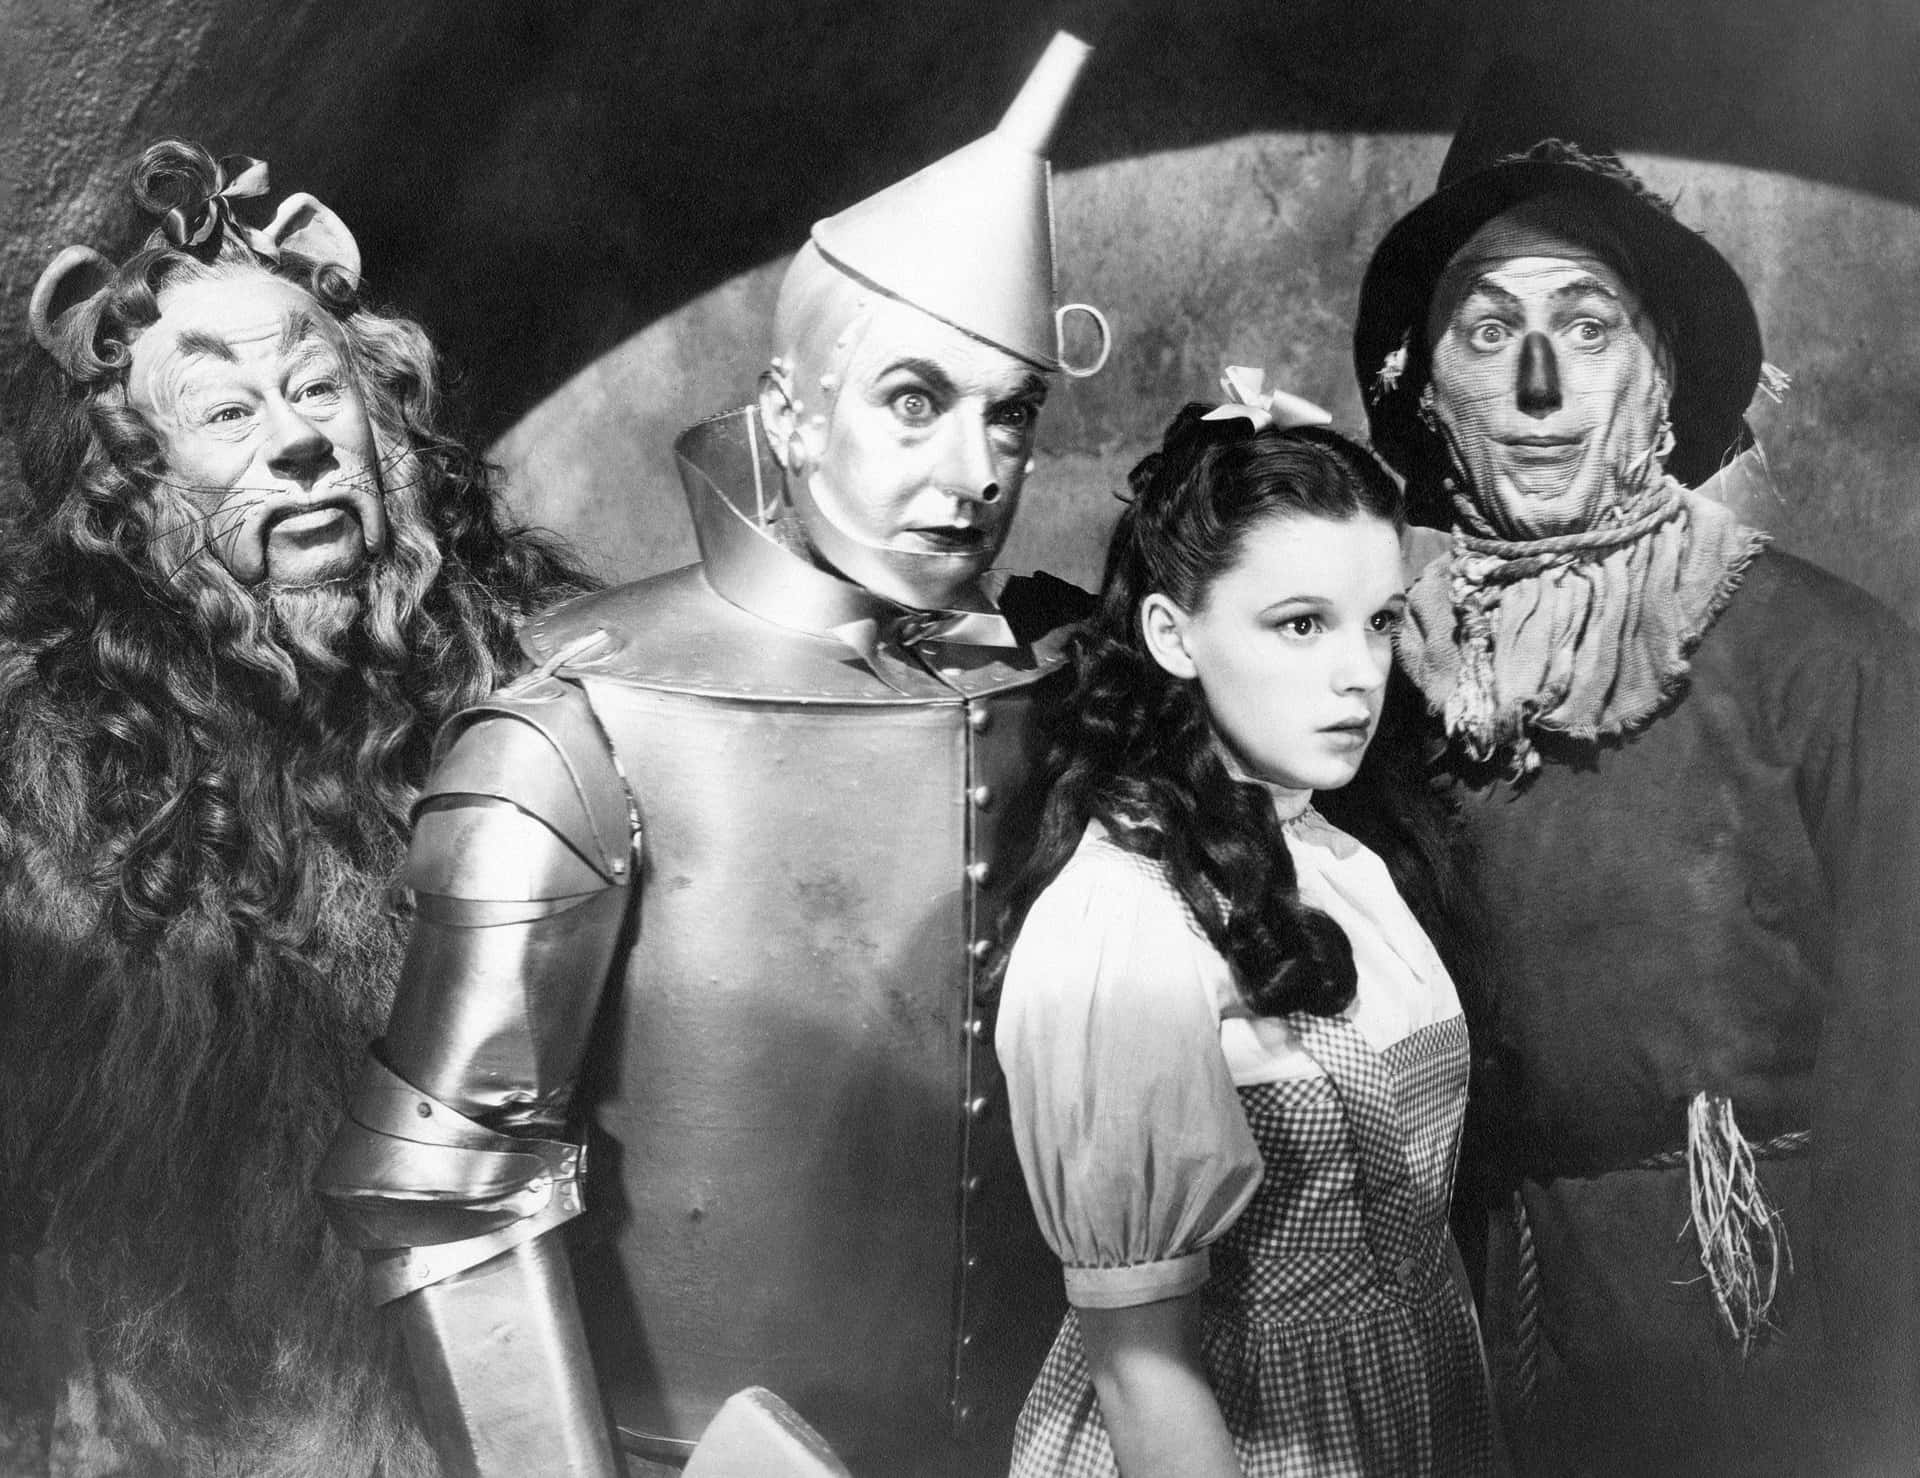 The Wizard Of Oz, The Wizard Of Oz, The Wizard Of Oz, And The Wizard Of Oz Wallpaper